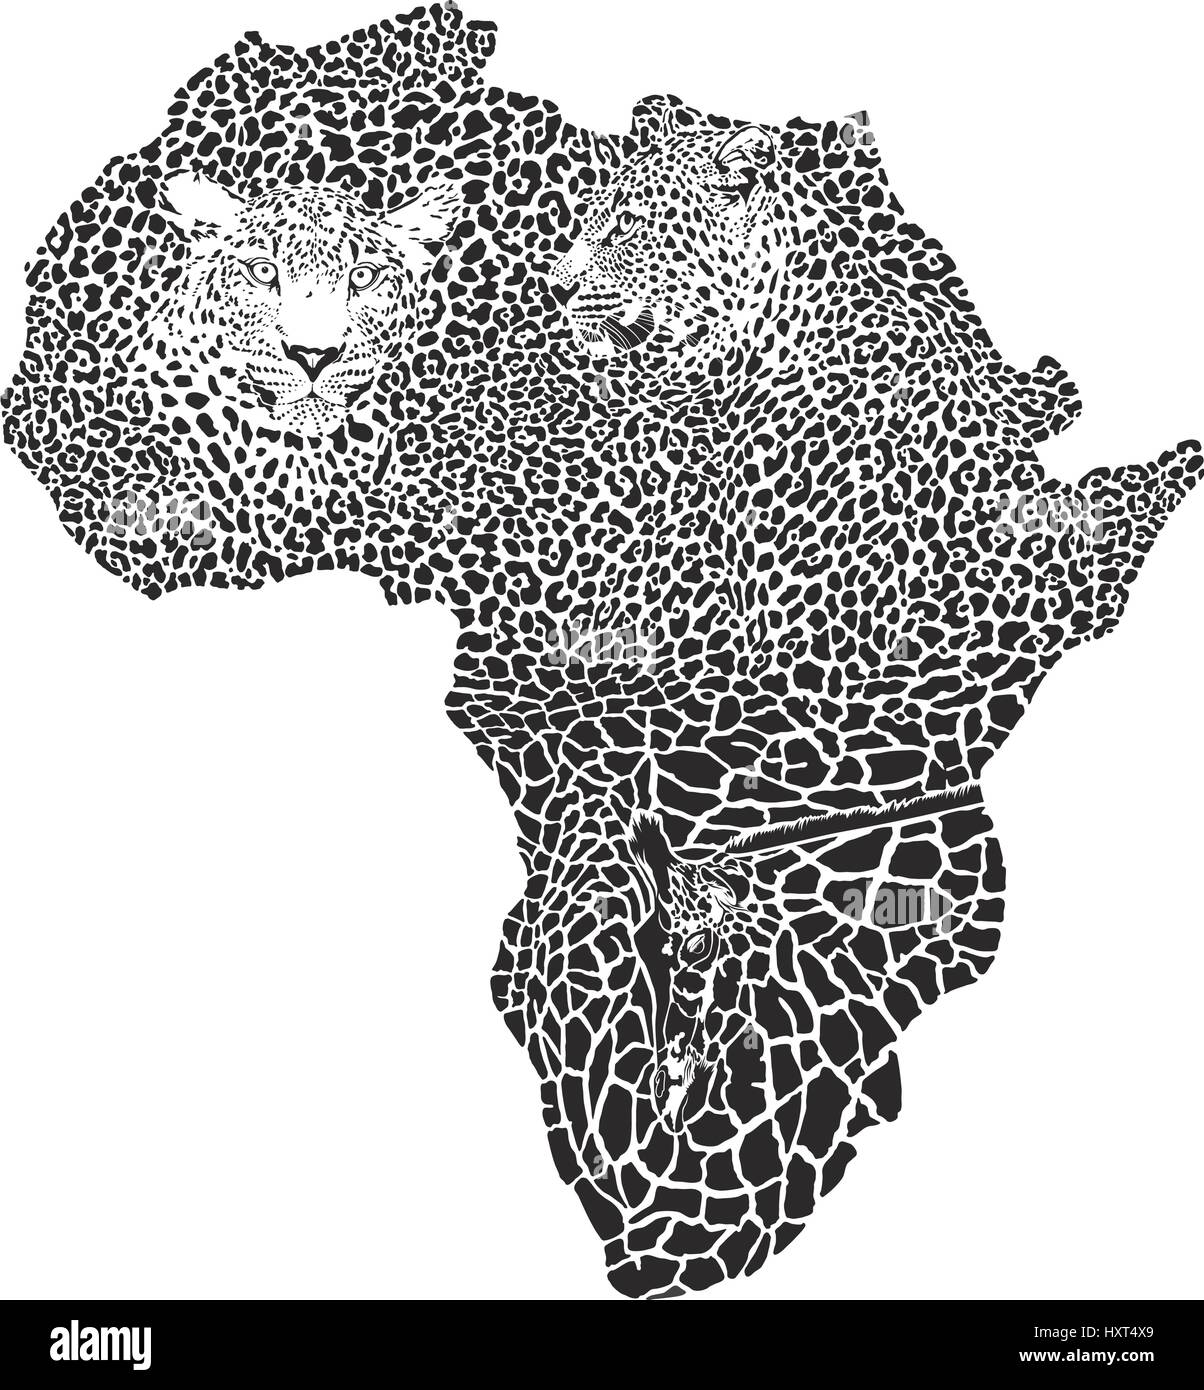 Les léopards sur le site de l'Afrique Illustration de Vecteur